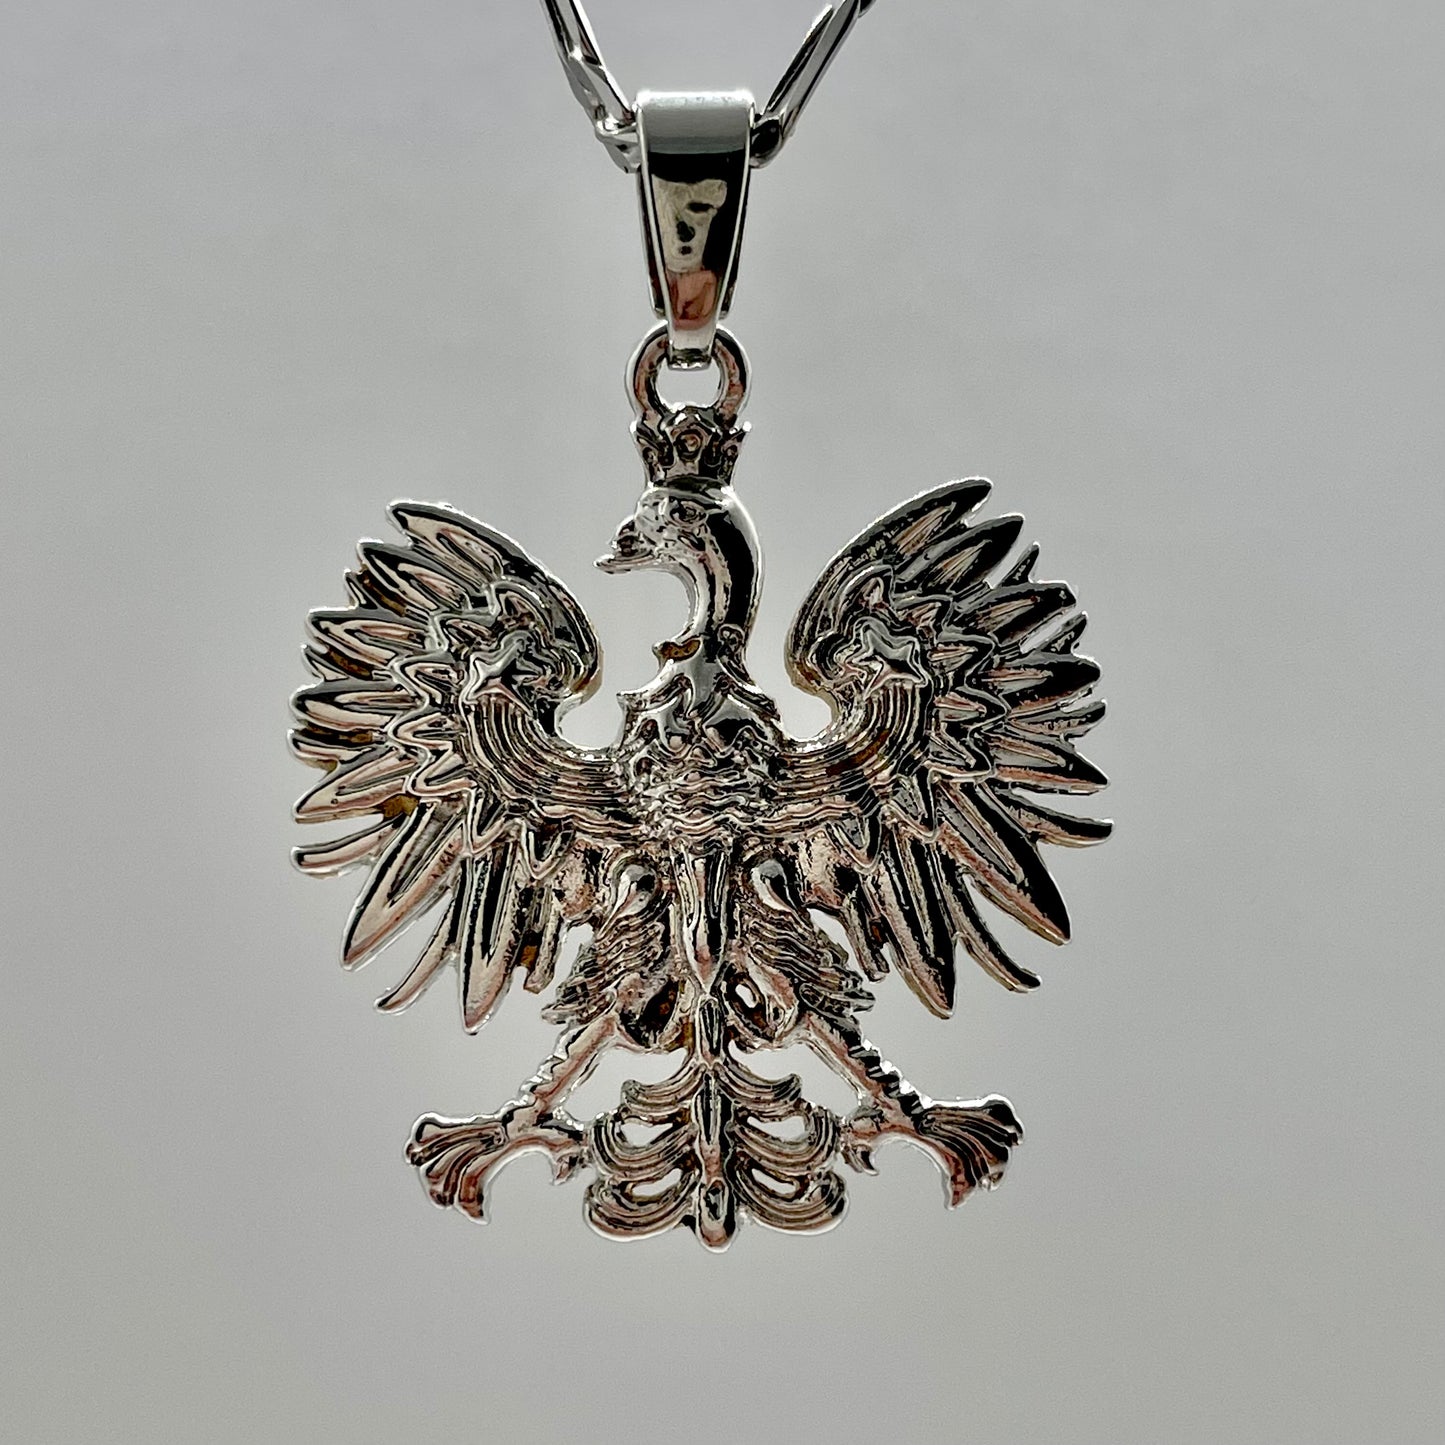 Poland Eagle Pendant Necklace - Silver